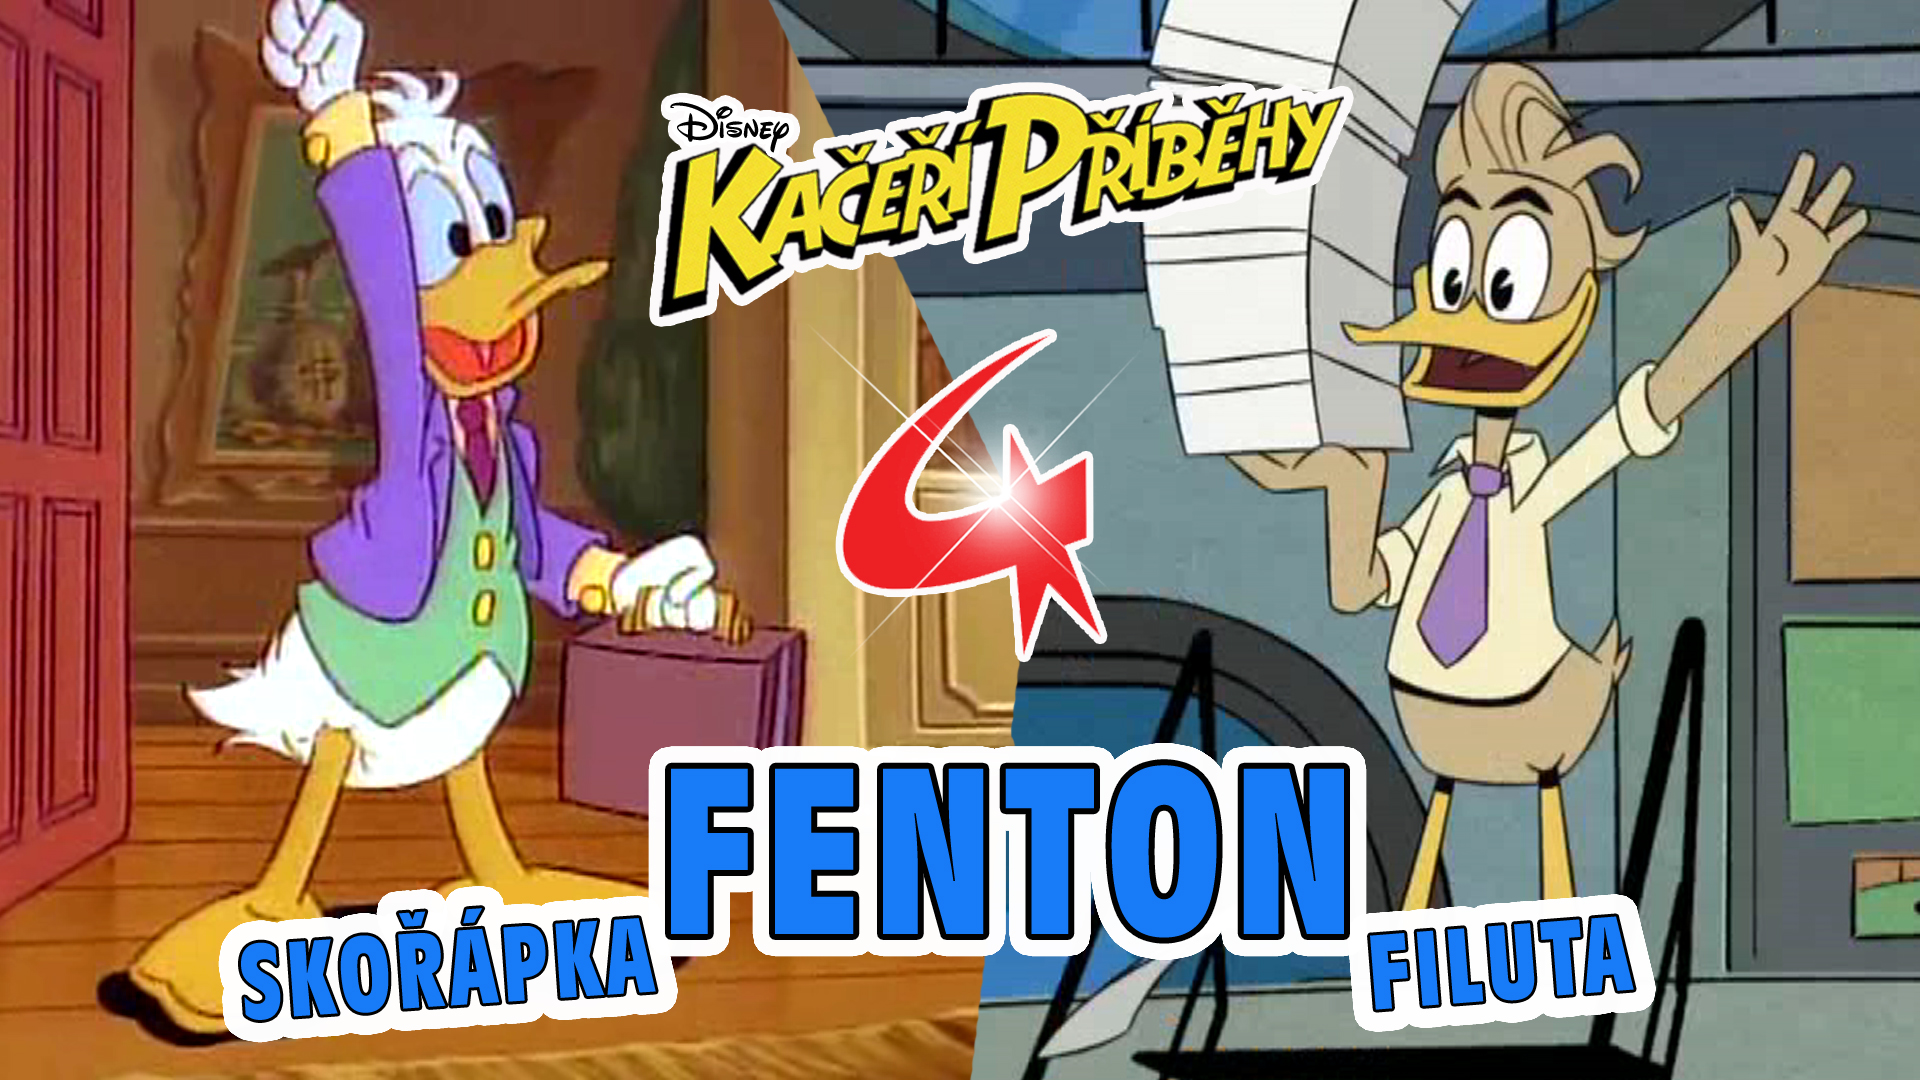 Fenton Filuta 1987 / 2018